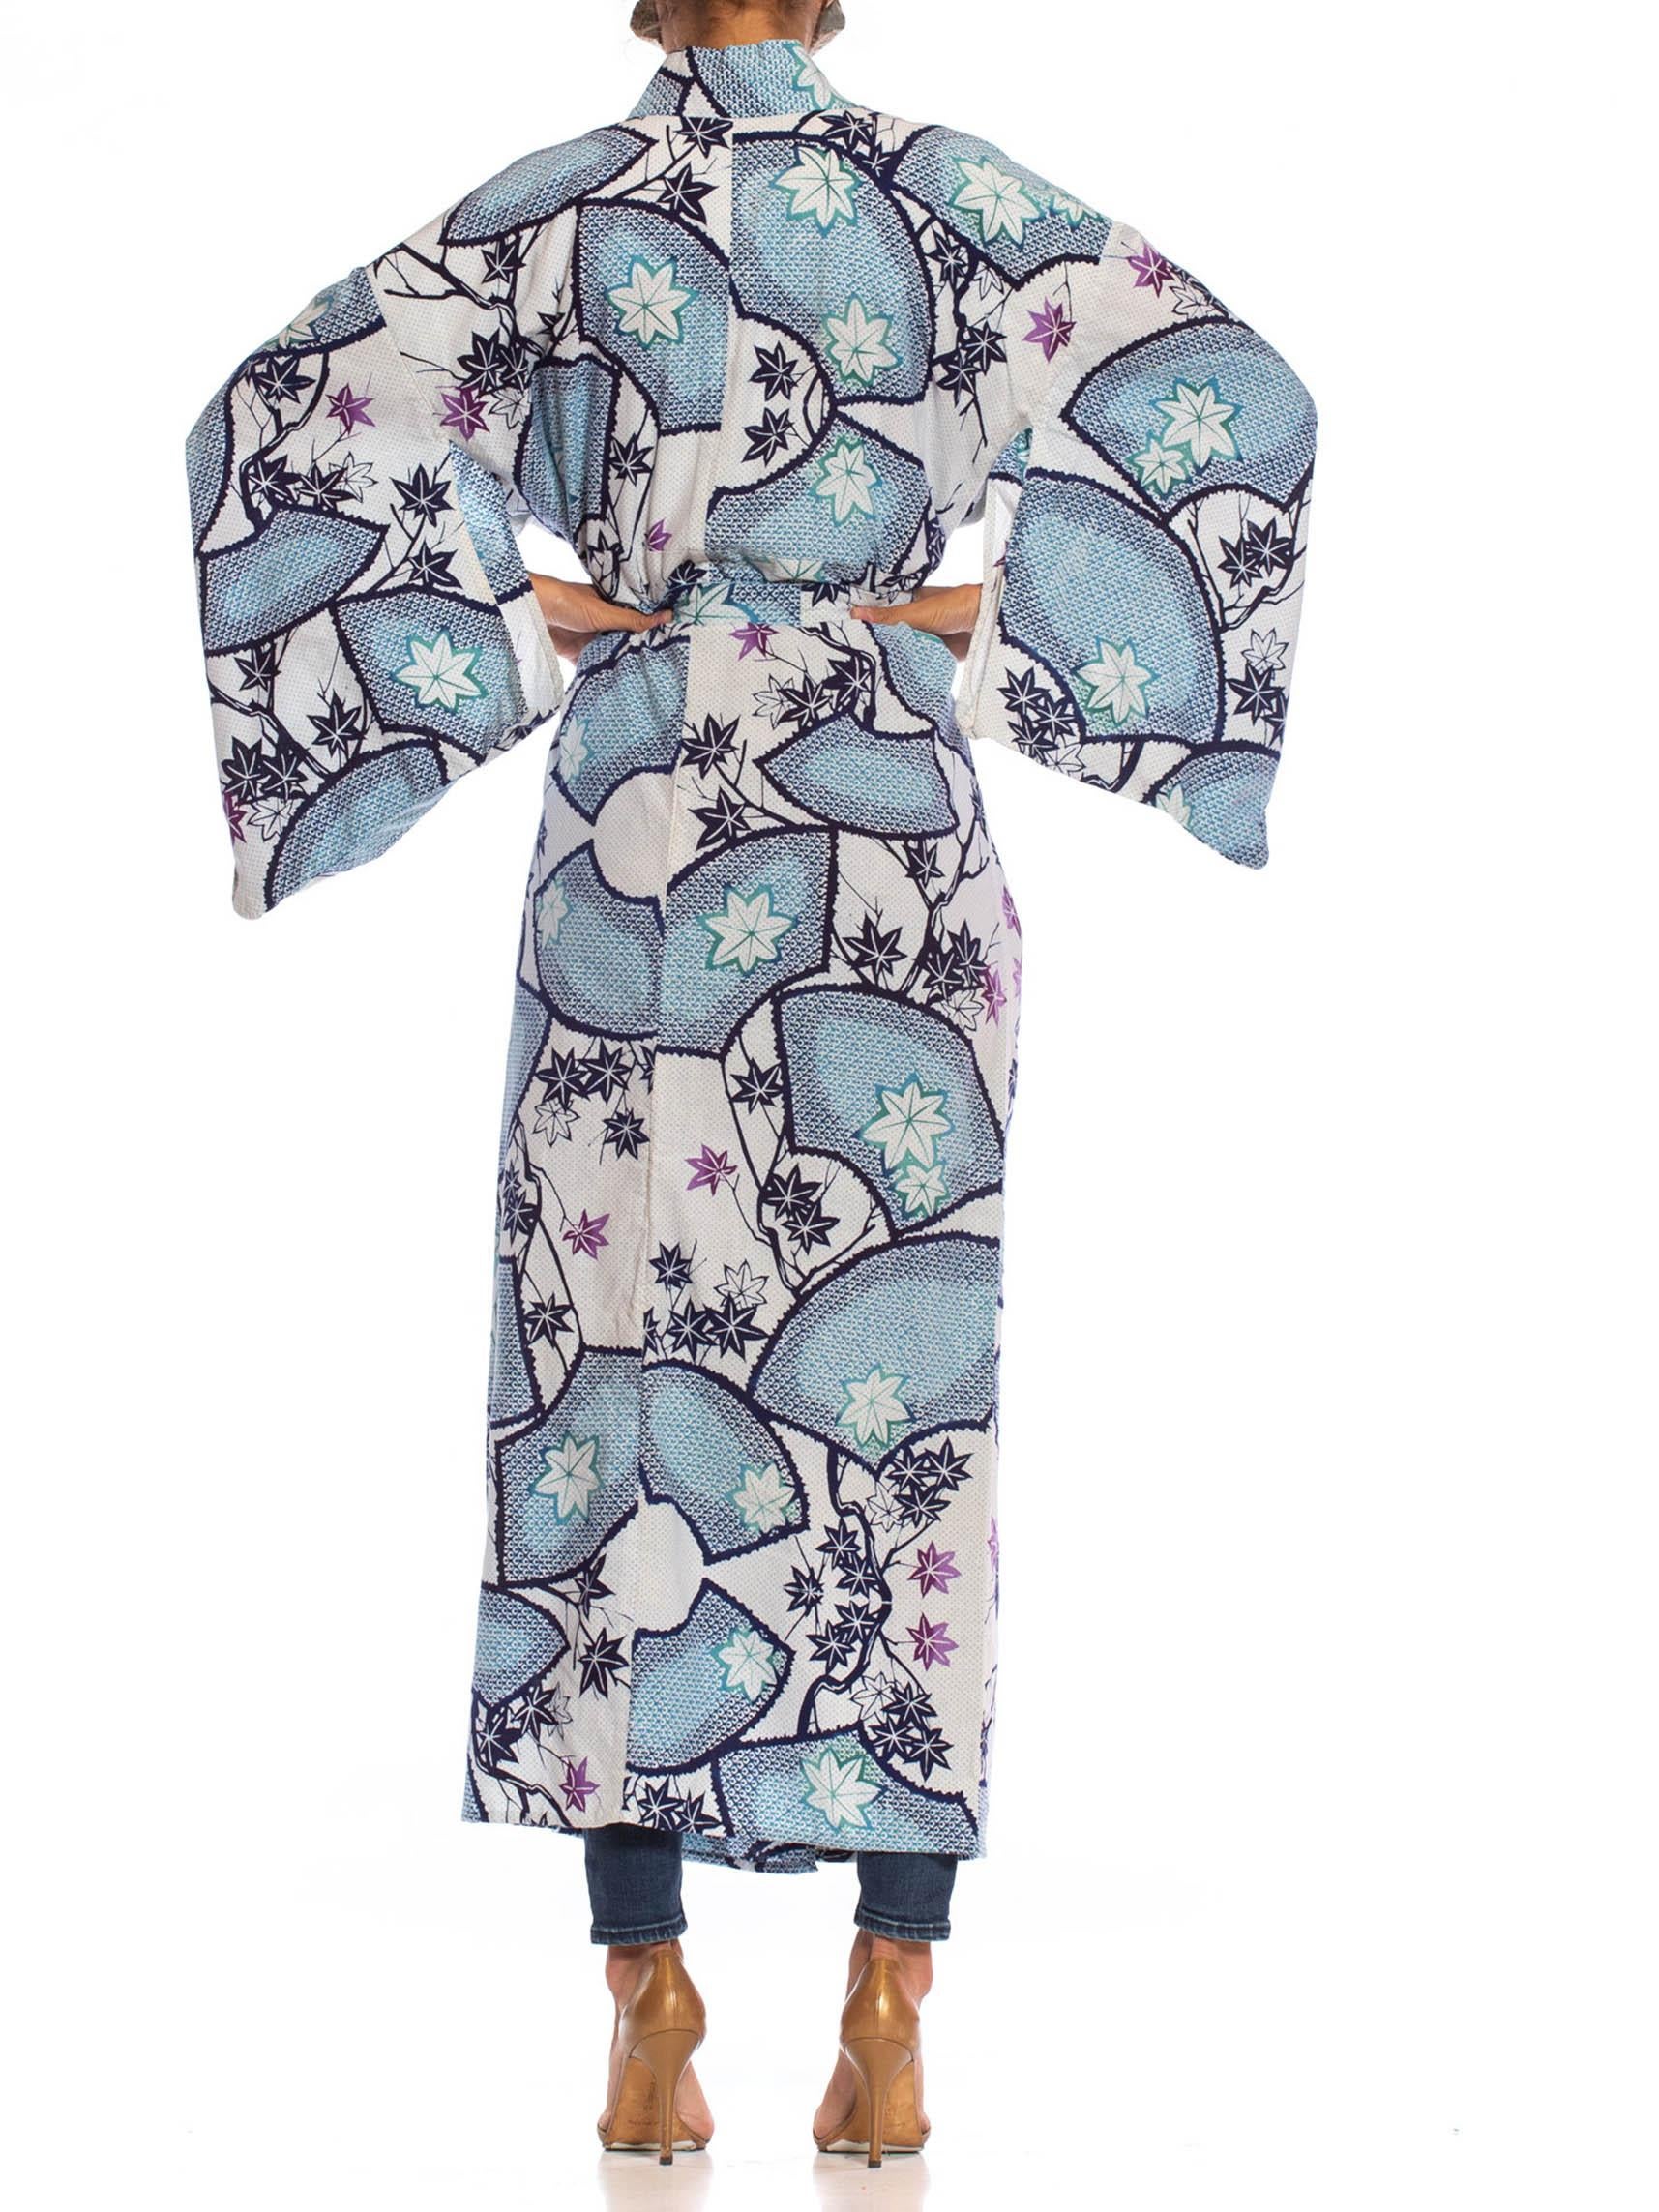 Gray 1980S Blue & White Cotton Japanese Maple Leaf Shibori Print Kimono Robe Sash For Sale